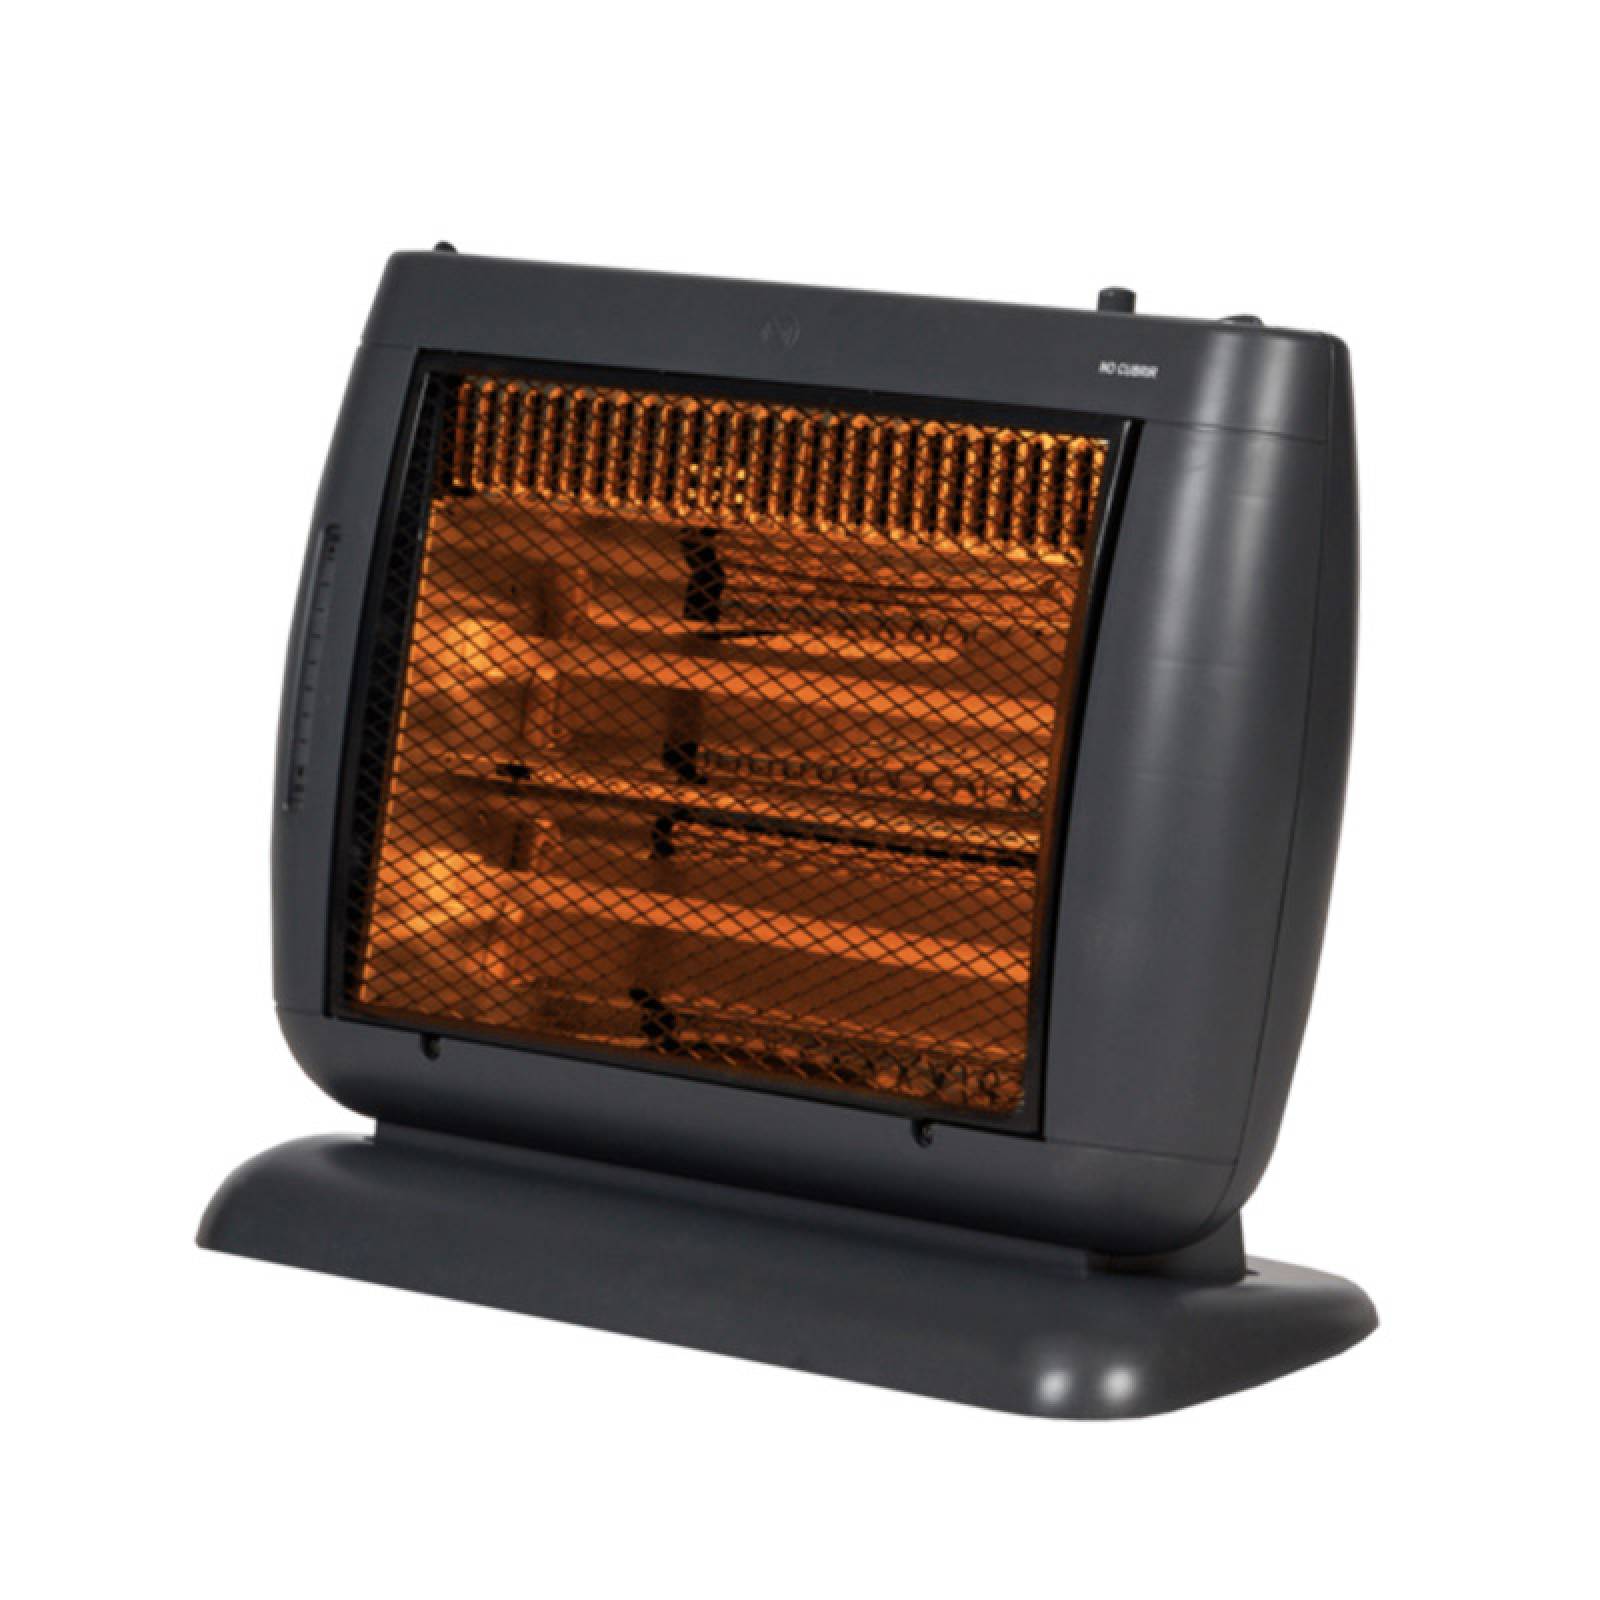 Calentador Calefactor Elec 1200 w Humidificador Heat Wave